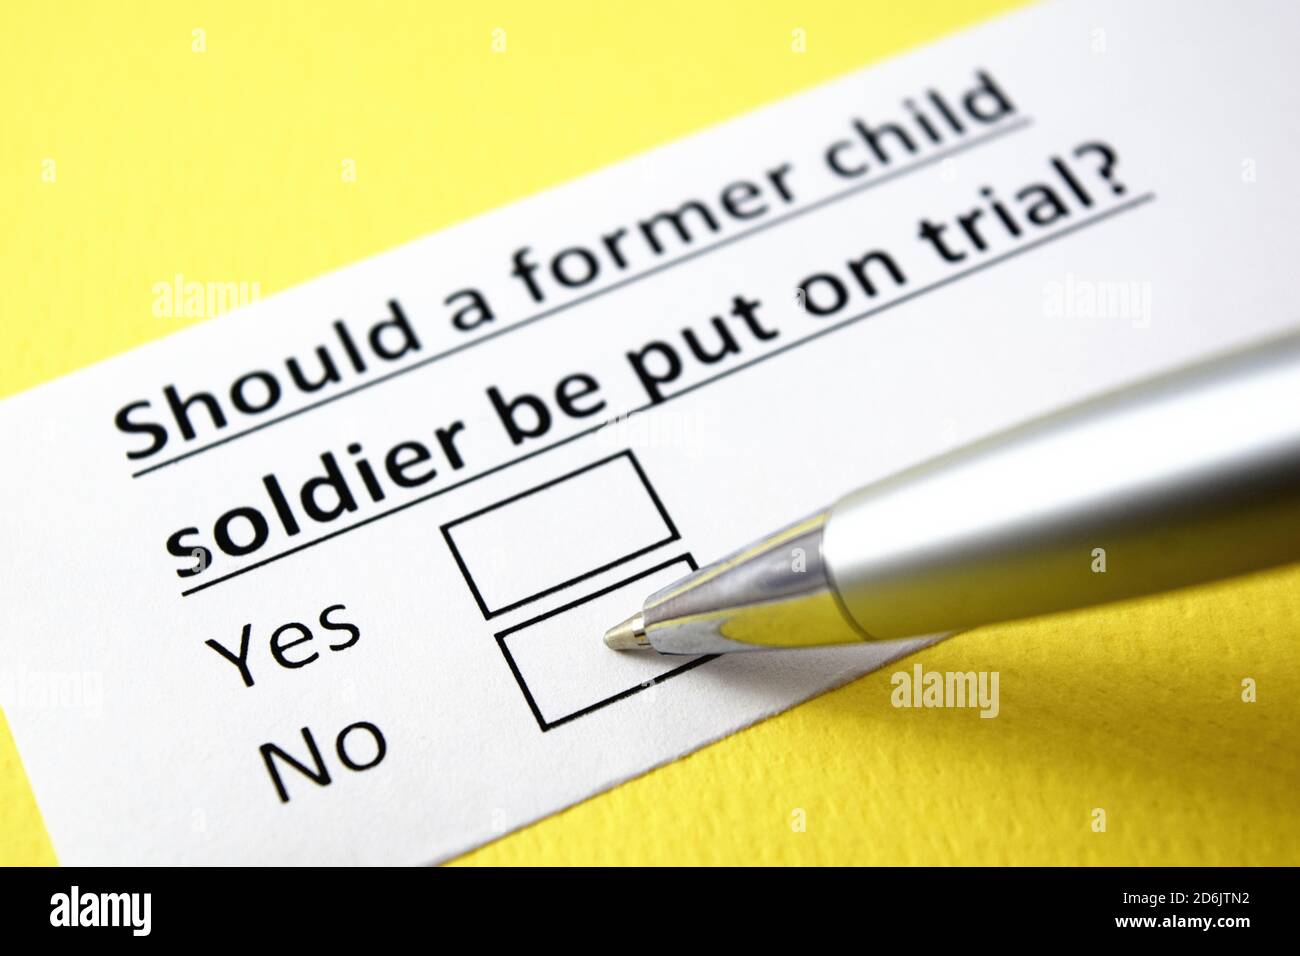 Soll ein ehemaliger Kindersoldat vor Gericht gestellt werden? Ja oder Nein? Stockfoto